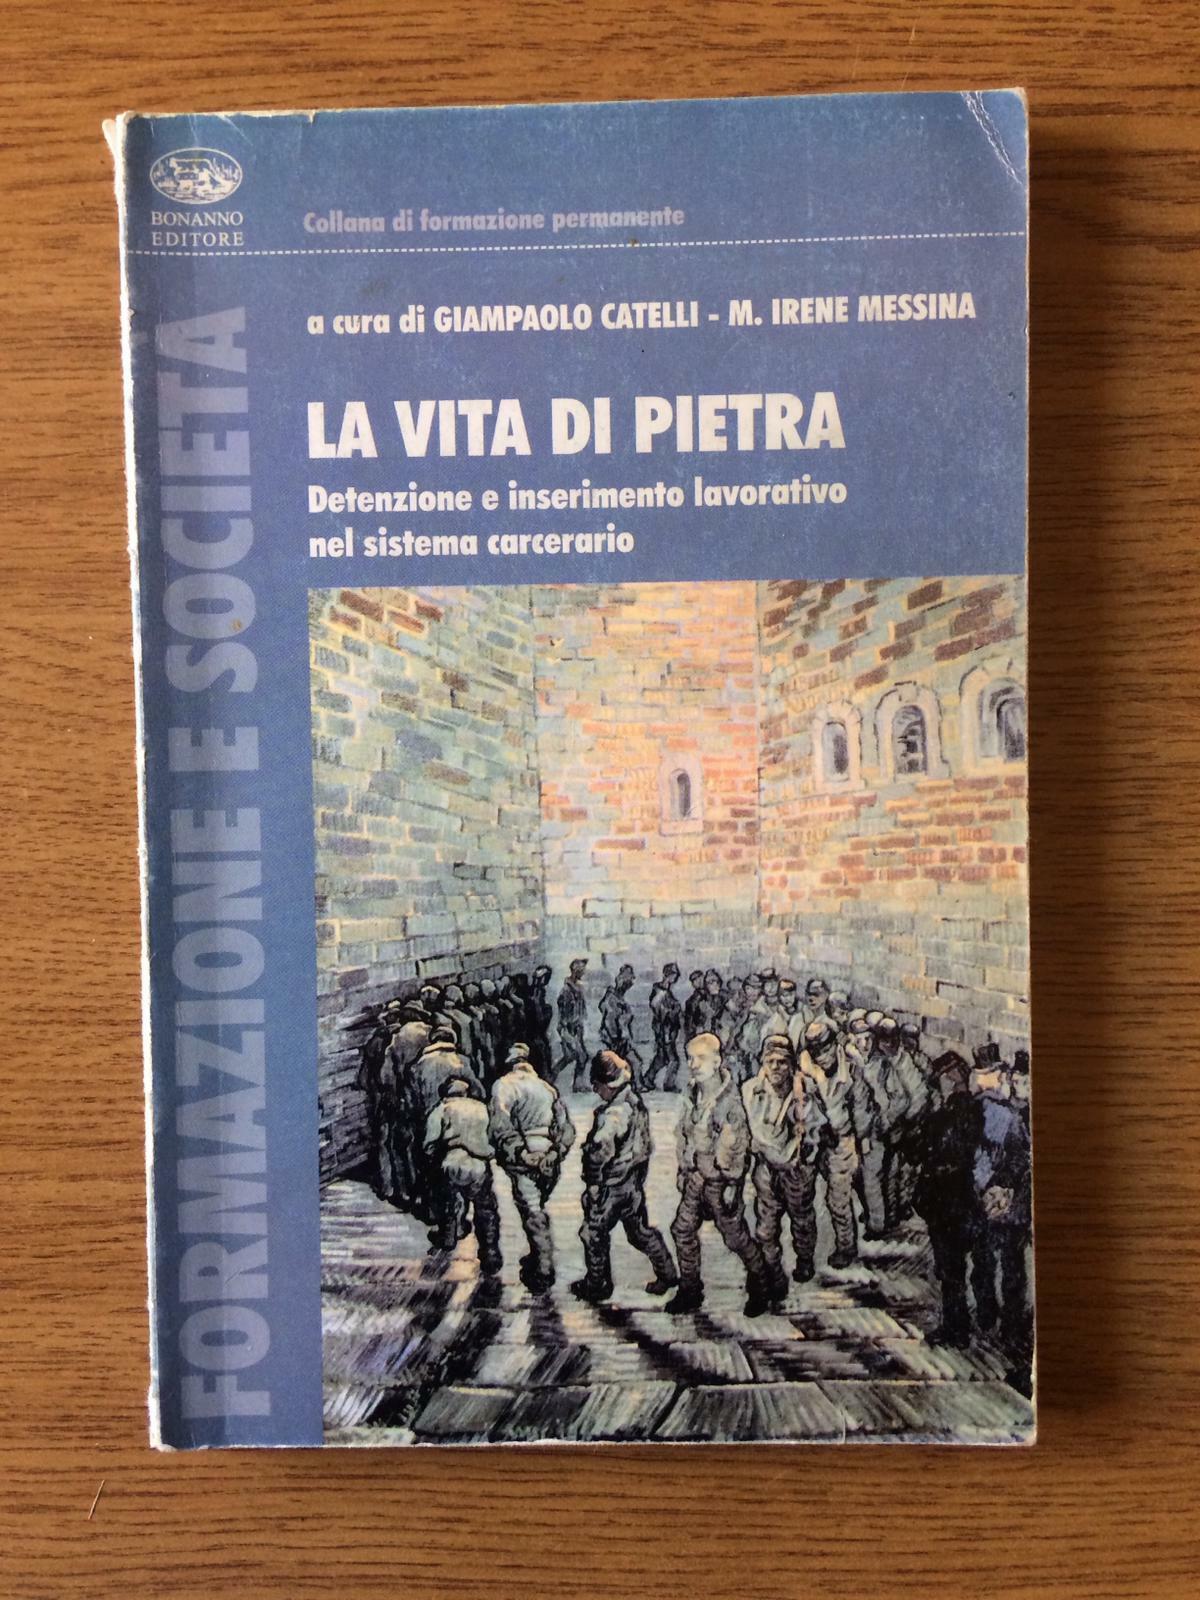 La vita di pietra - G. Catelli, M. I. Messina - Editore Bonanno - 2005 - AR 